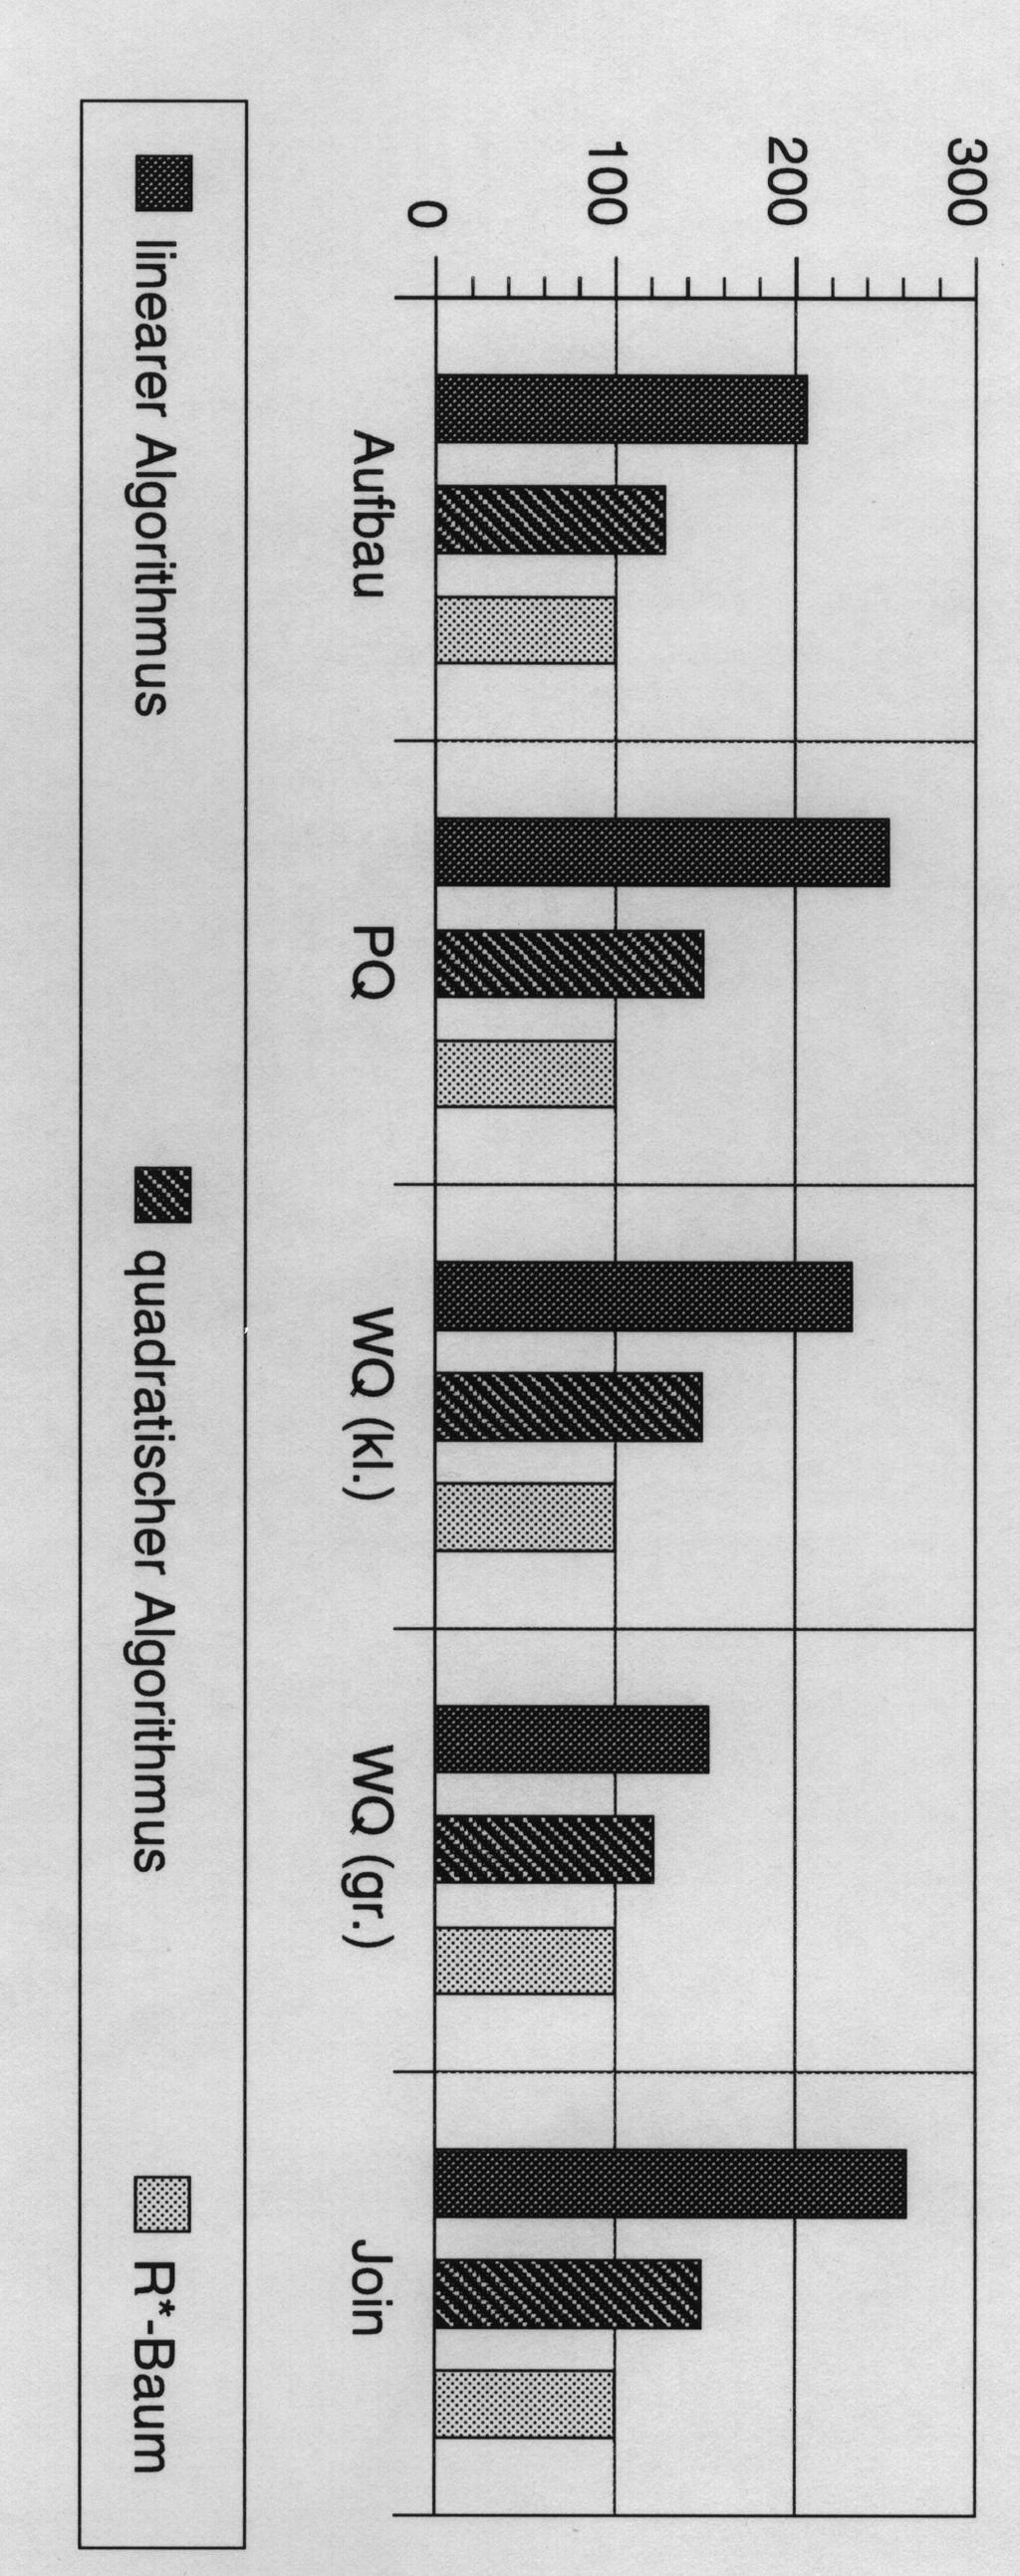 4.3 Leistungsvergleich von R-Bäumen [Beckmann, Kriegel, Schneider, Seeger 1990] Messung der Anzahl der Seitenzugriffe für Aufbau, Point Queries (PQ), kleine und